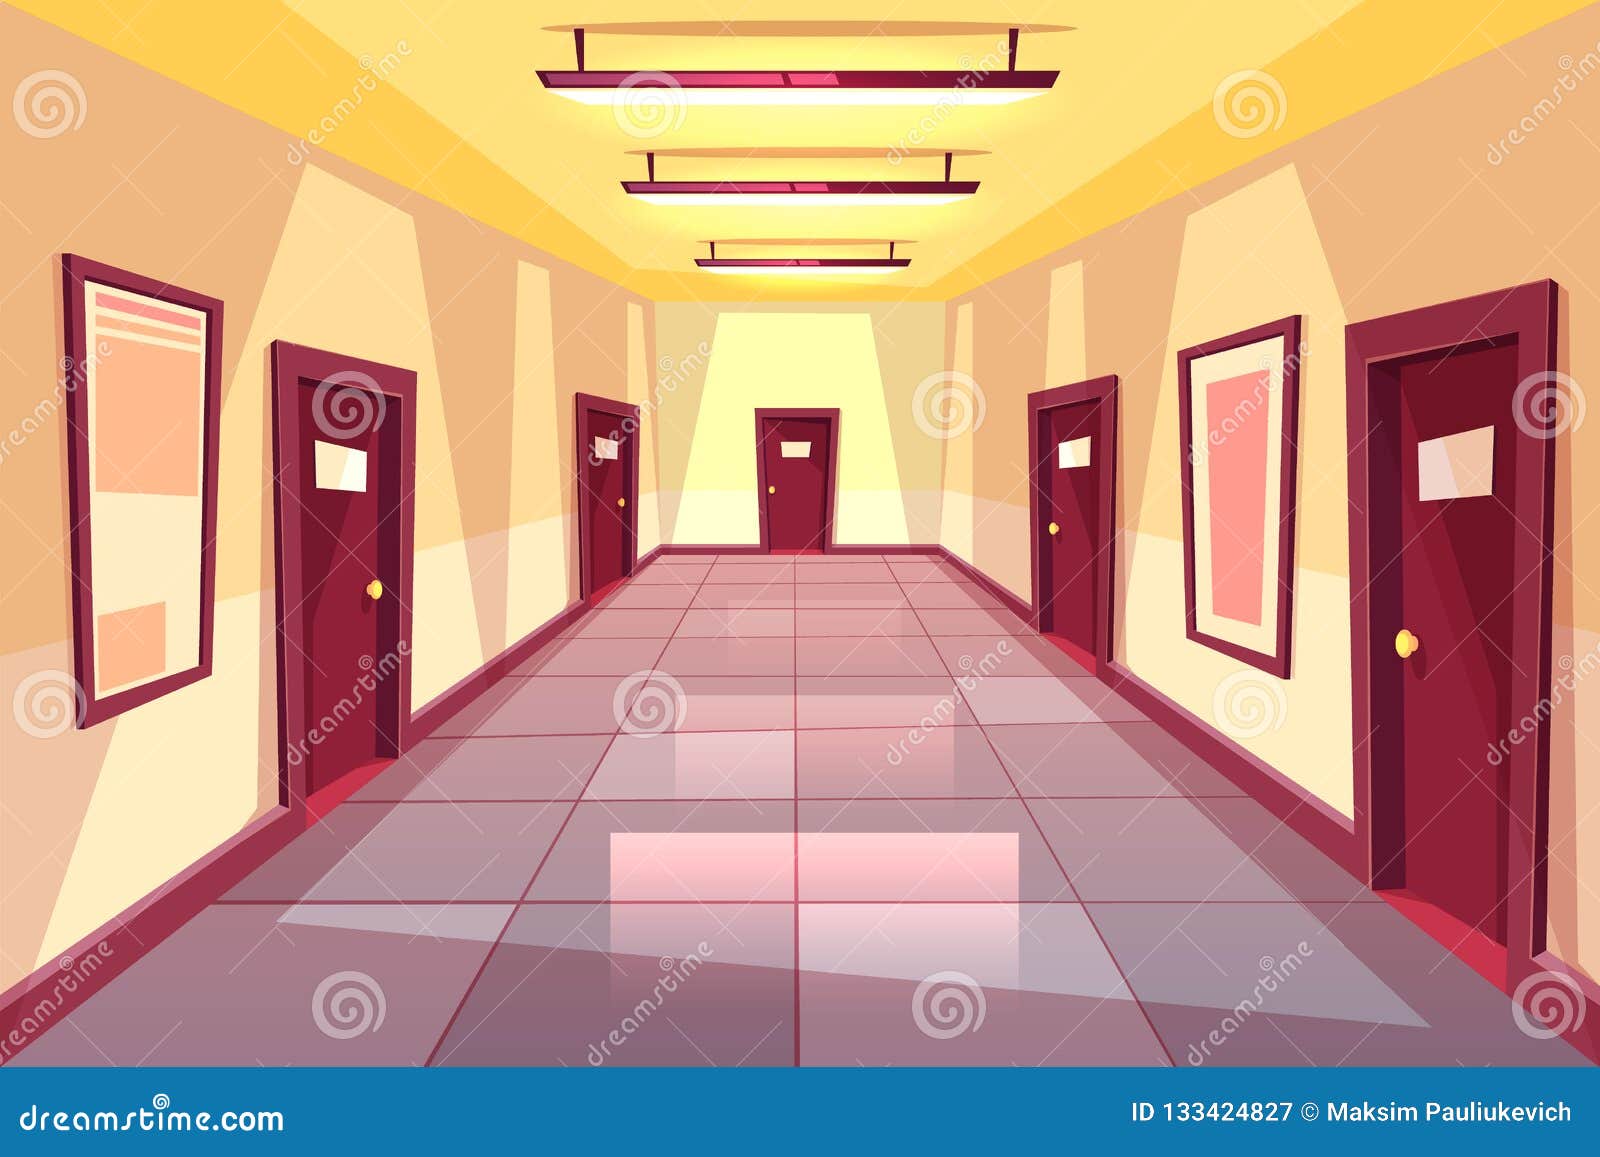  cartoon hallway, corridor with many doors